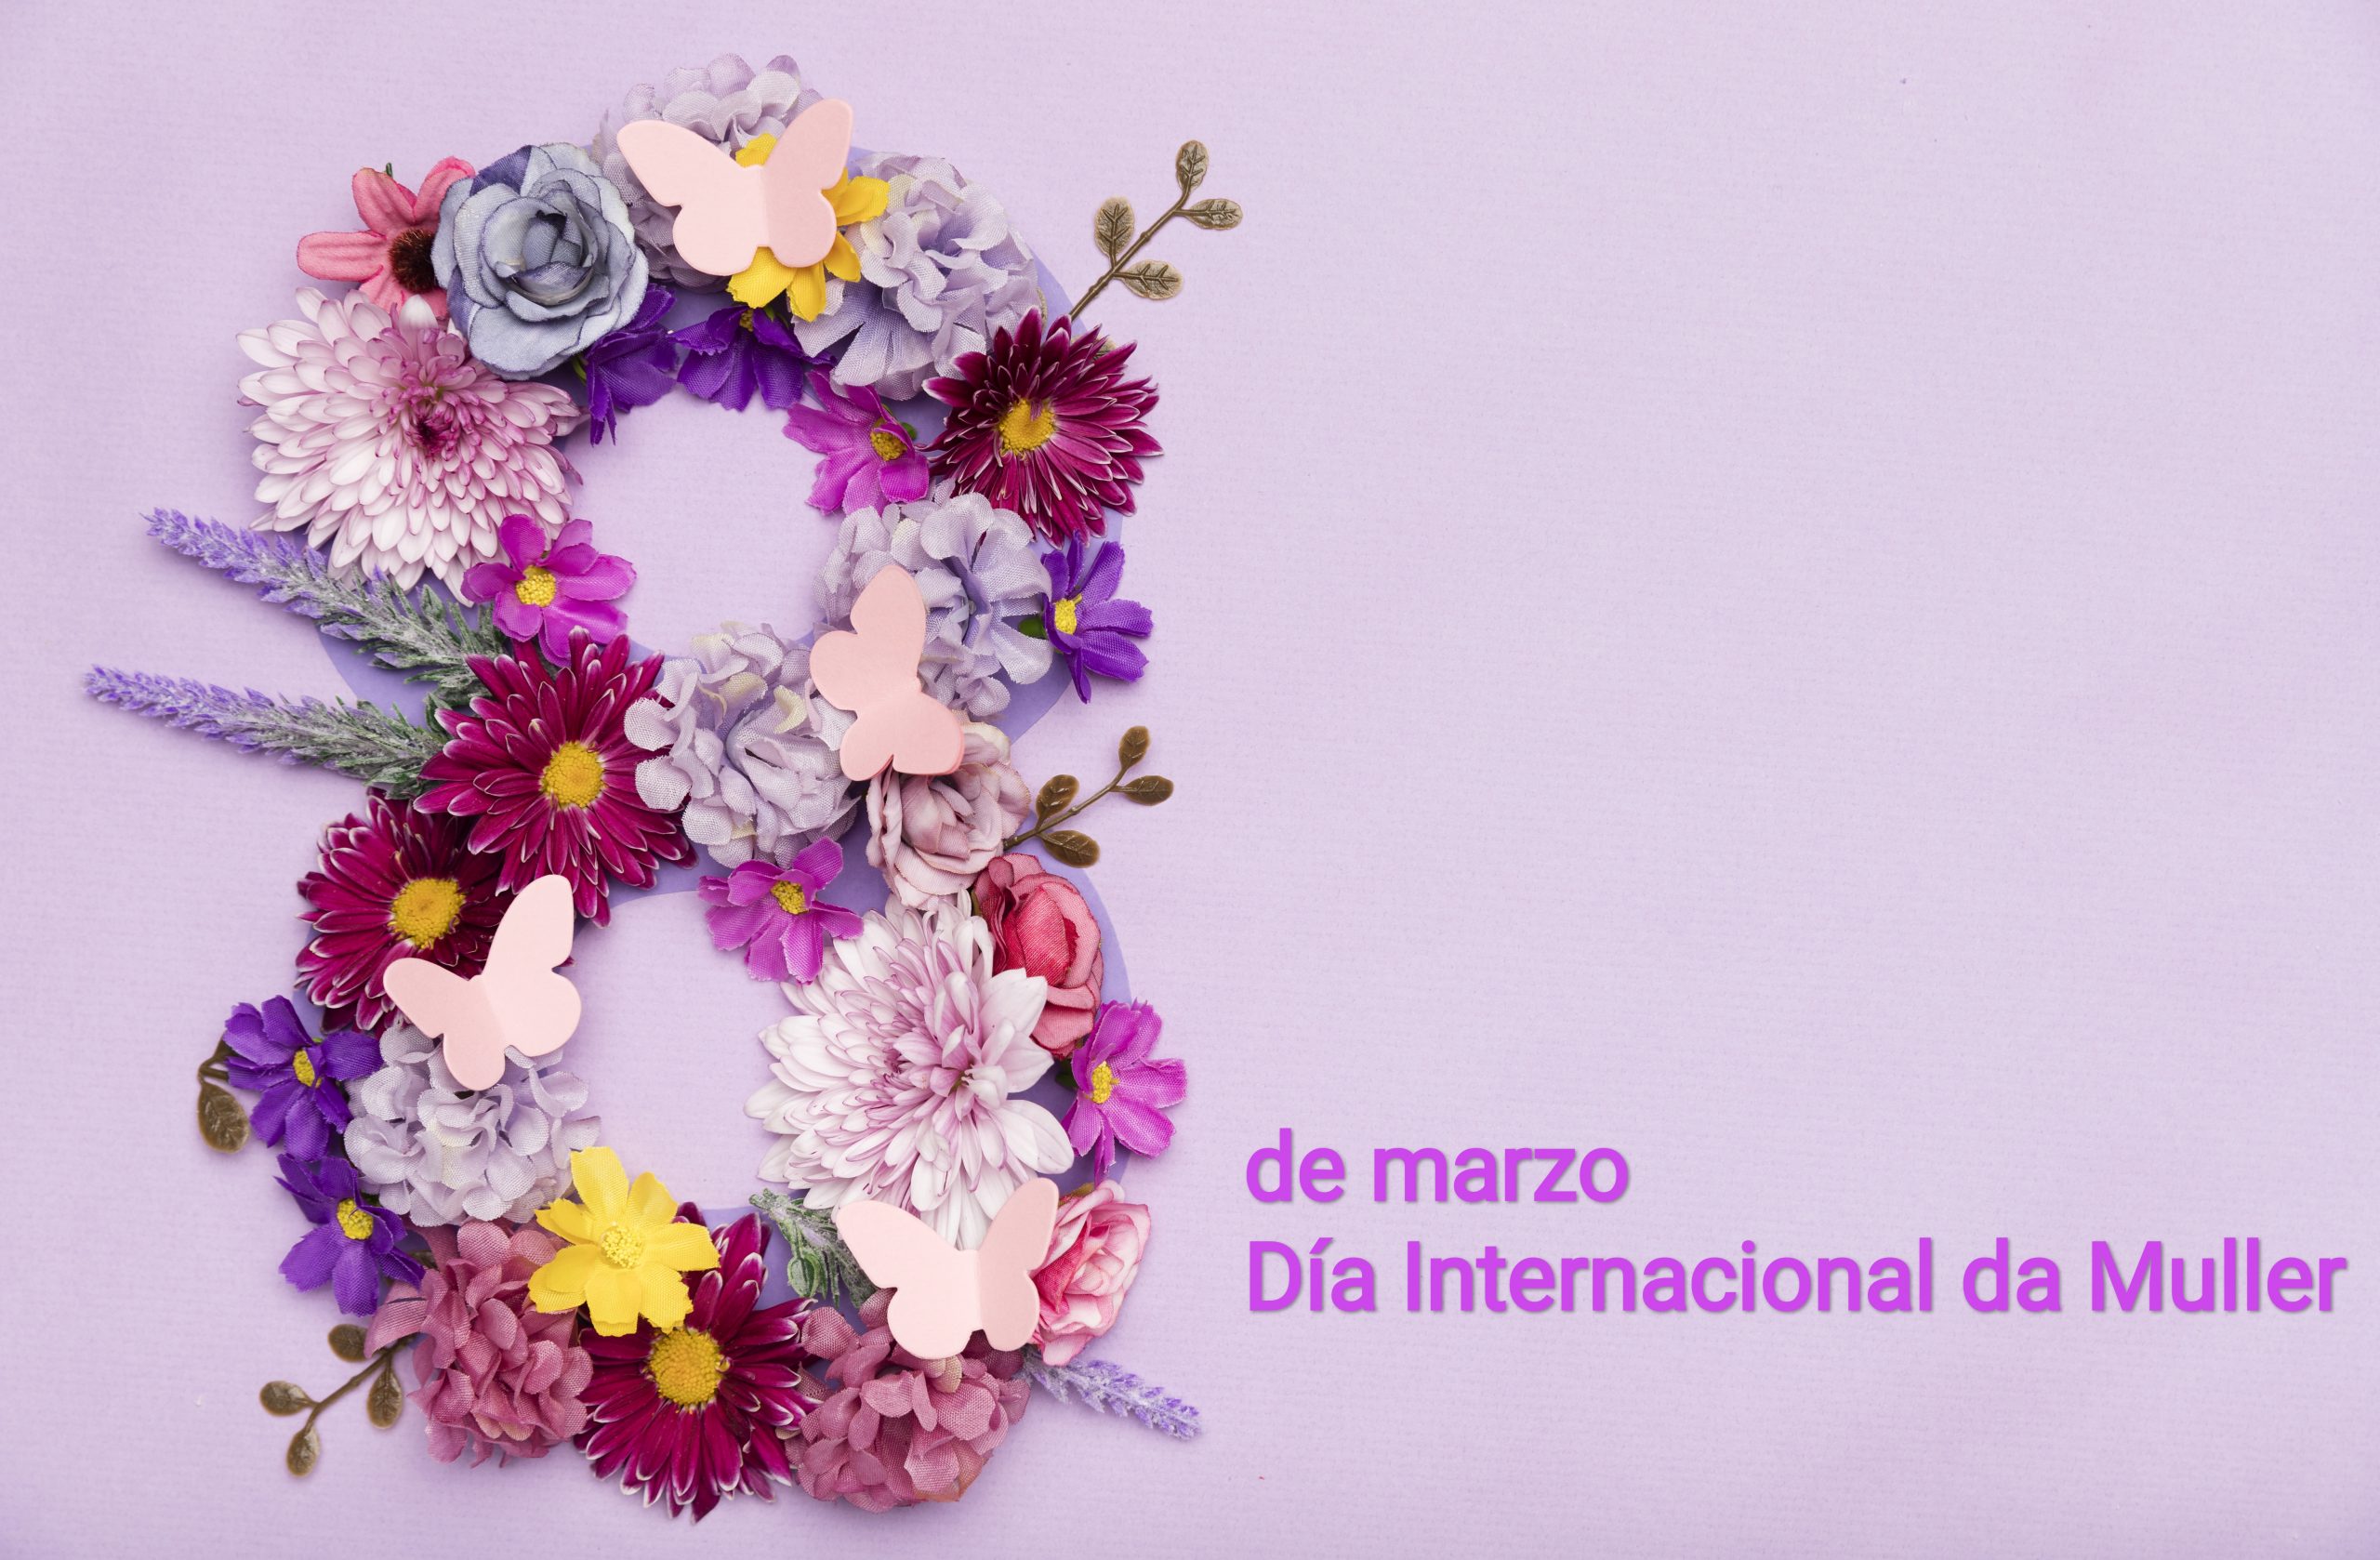 8 de marzo. Día Internacional da Muller